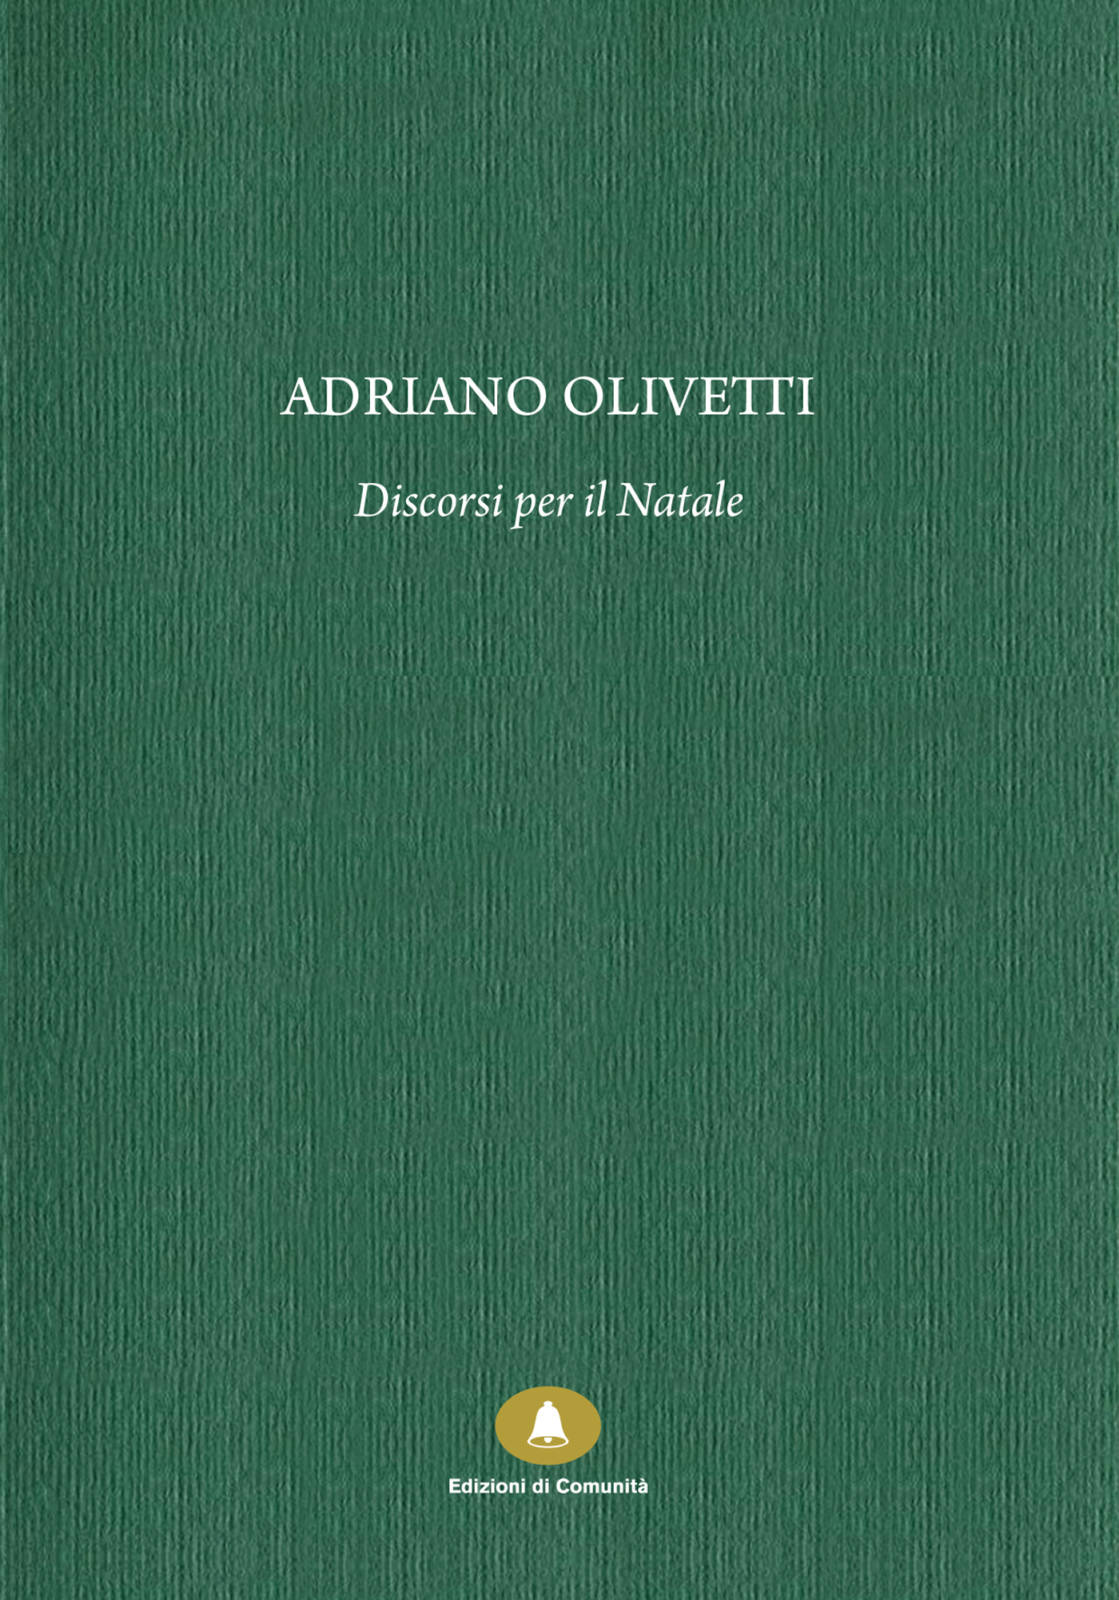 Adriano-Olivetti-–-Discorsi-per-il-Natale-1.jpg